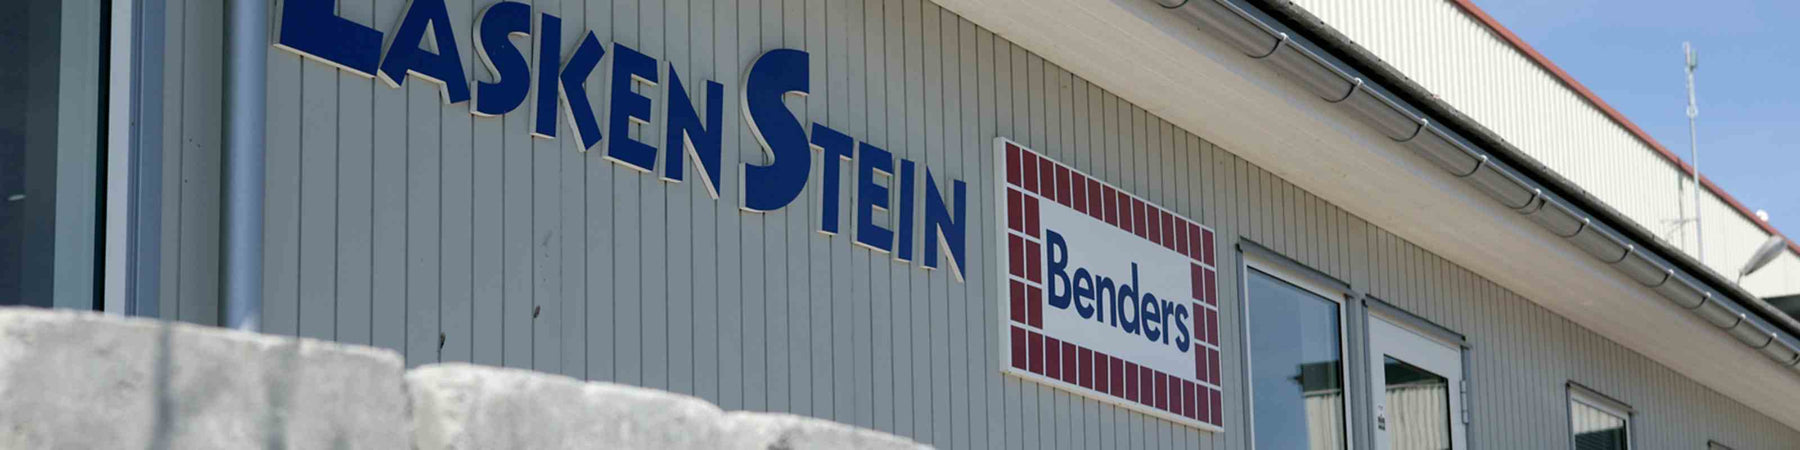 Benders Norge AS sitt oppkjøp av Lasken Stein AS i 2008